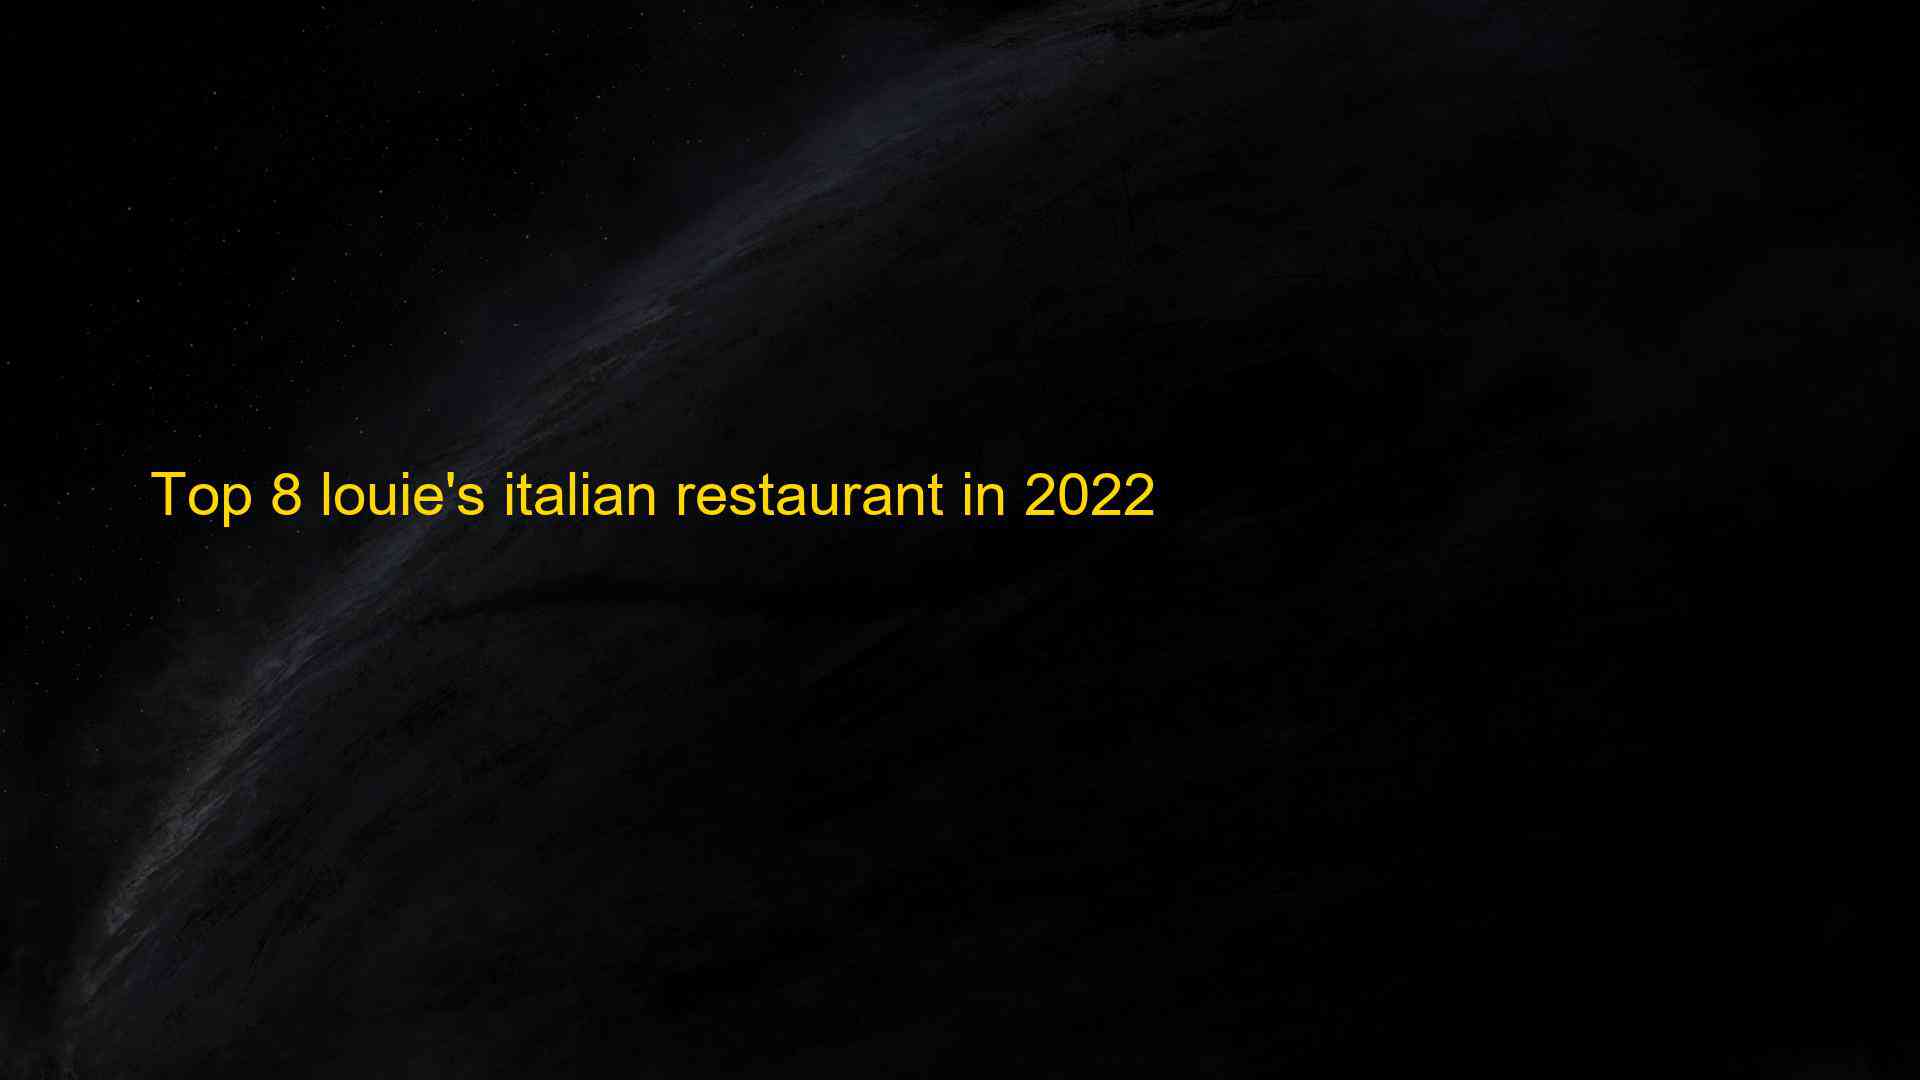 Top 8 louies italian restaurant in 2022 1663337319